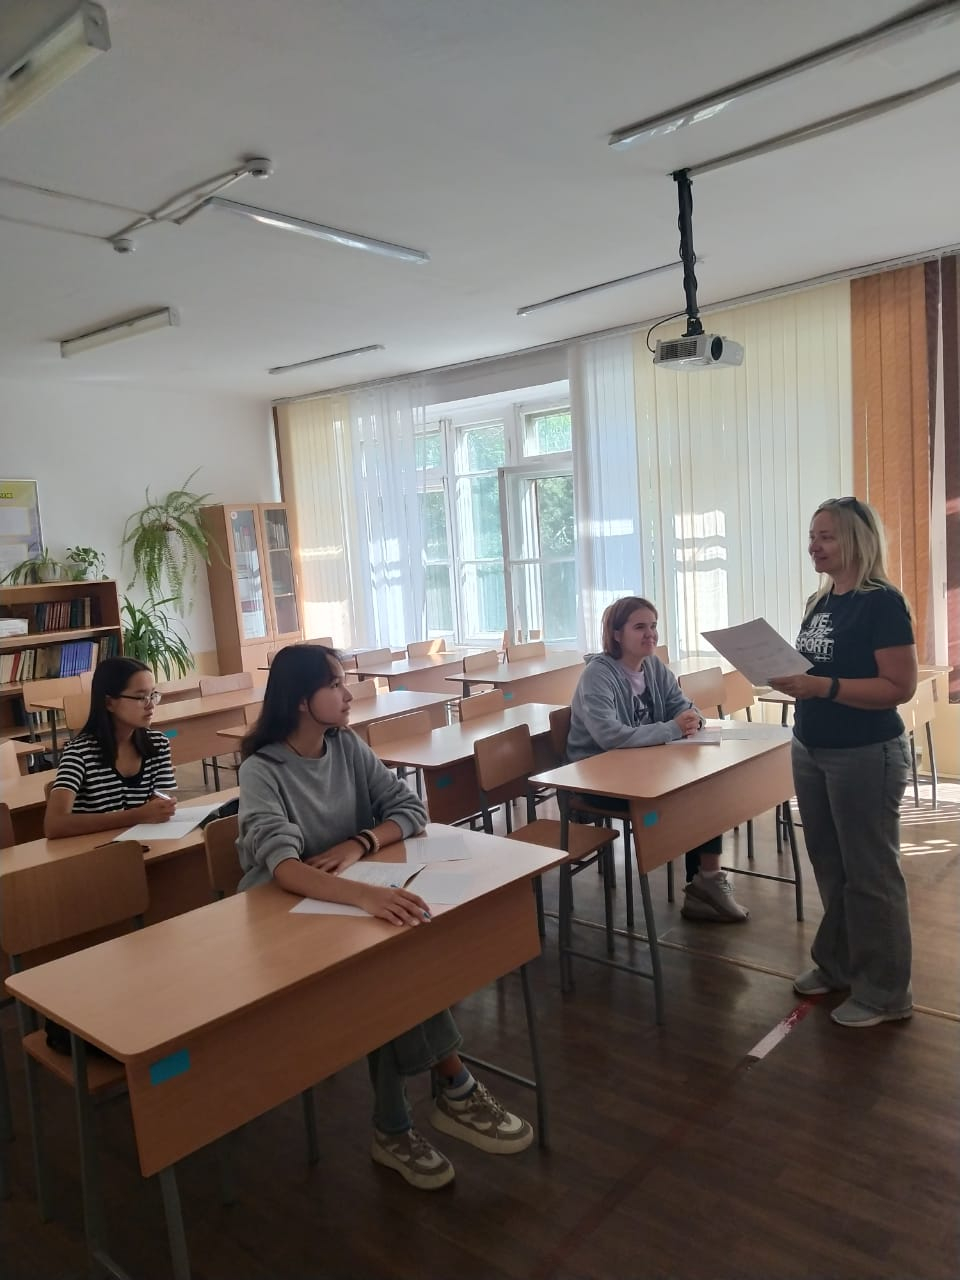 Сегодня состоялось занятие в школе олимпийского резерва по русскому языку для учащихся 8-11 классов. Ребята познакомились с типами заданий, повторили структуру эссе, выполнили практическую часть